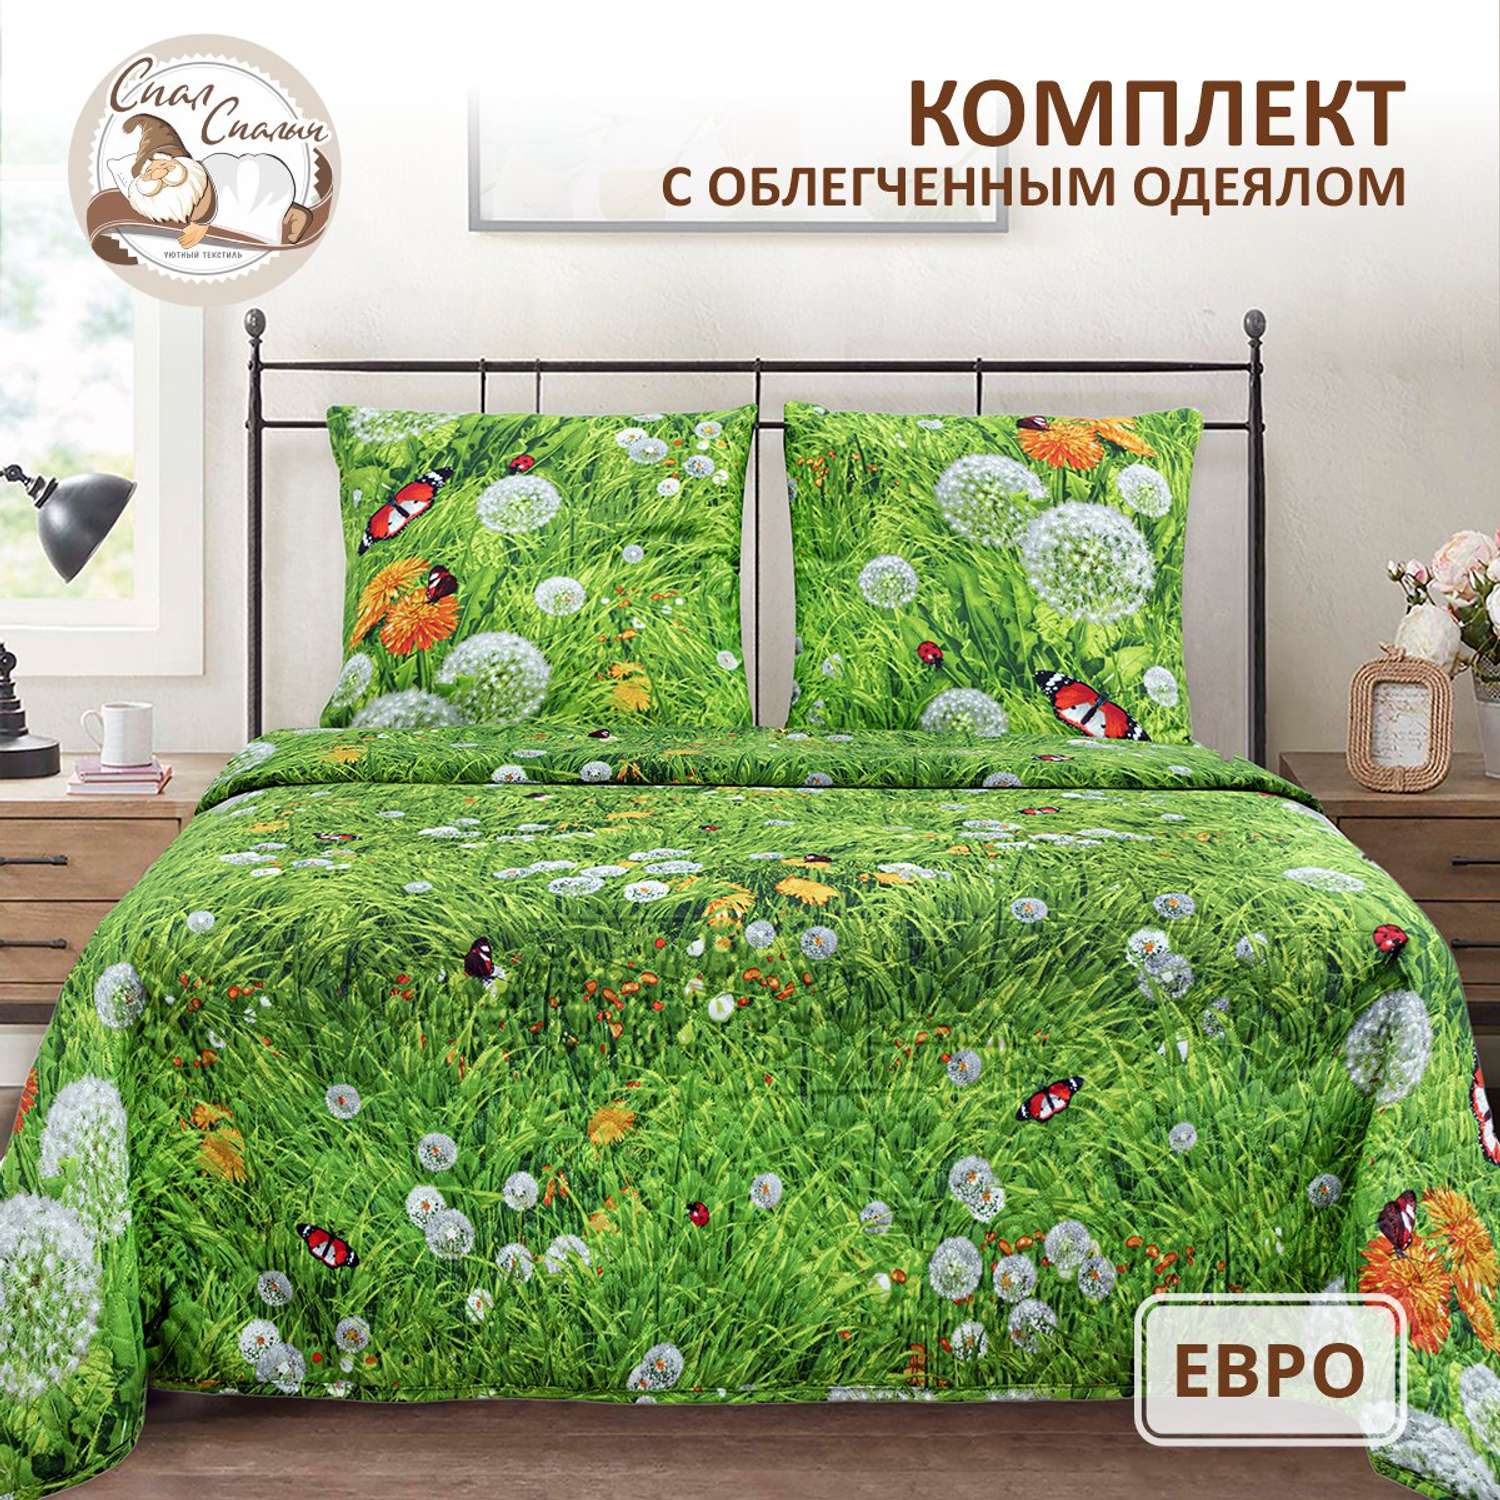 Комплект постельного белья Спал Спалыч универсальный с покрывалом евро рис.3619-1 - фото 1